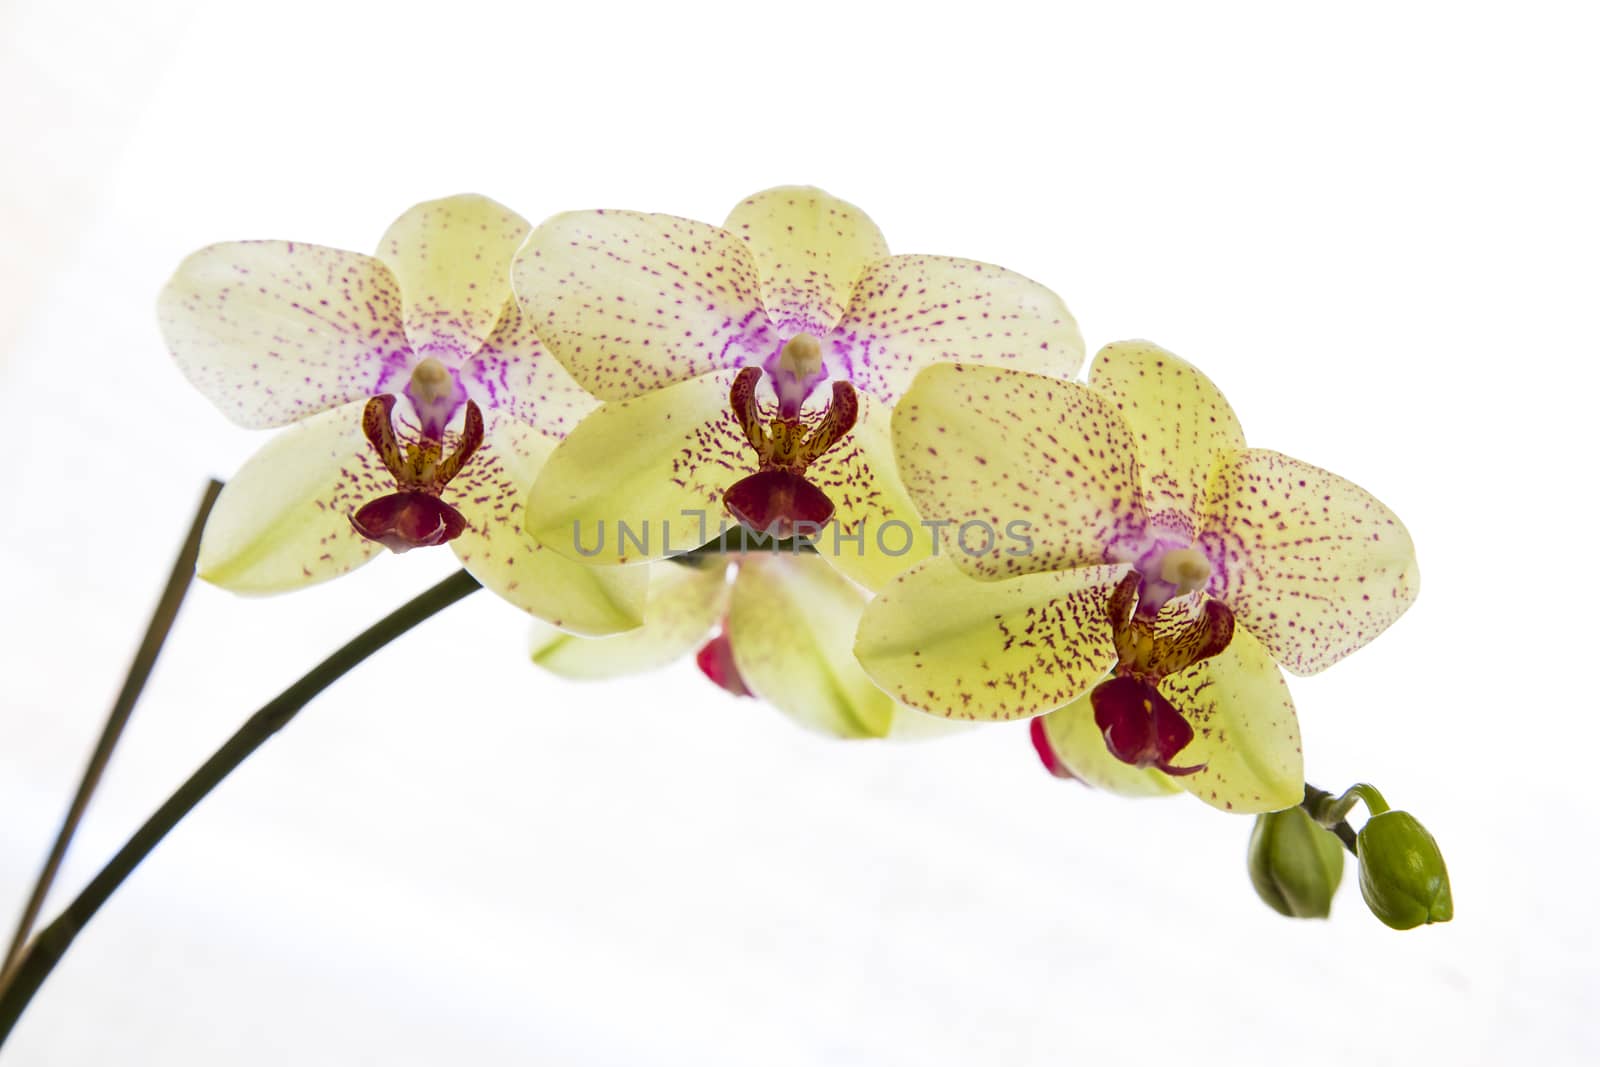 Orchid by nicobernieri